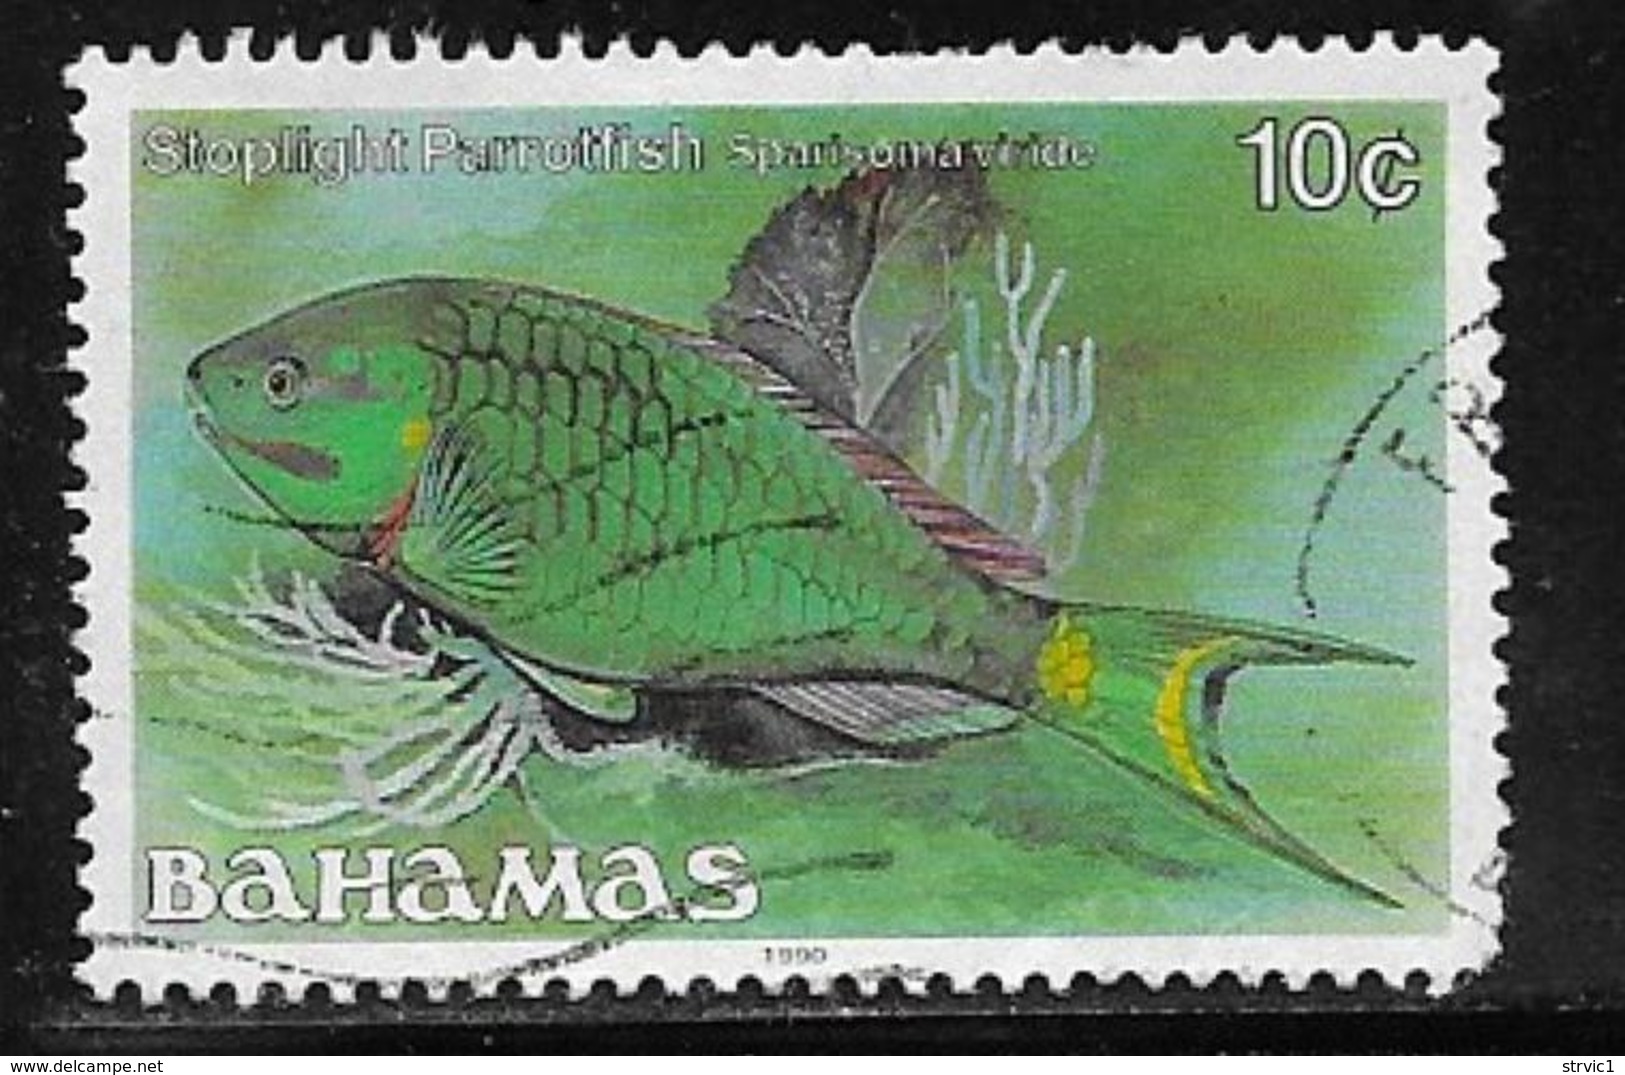 Bahamas Scott # 605b Used Fish, 1990 - Bahamas (1973-...)